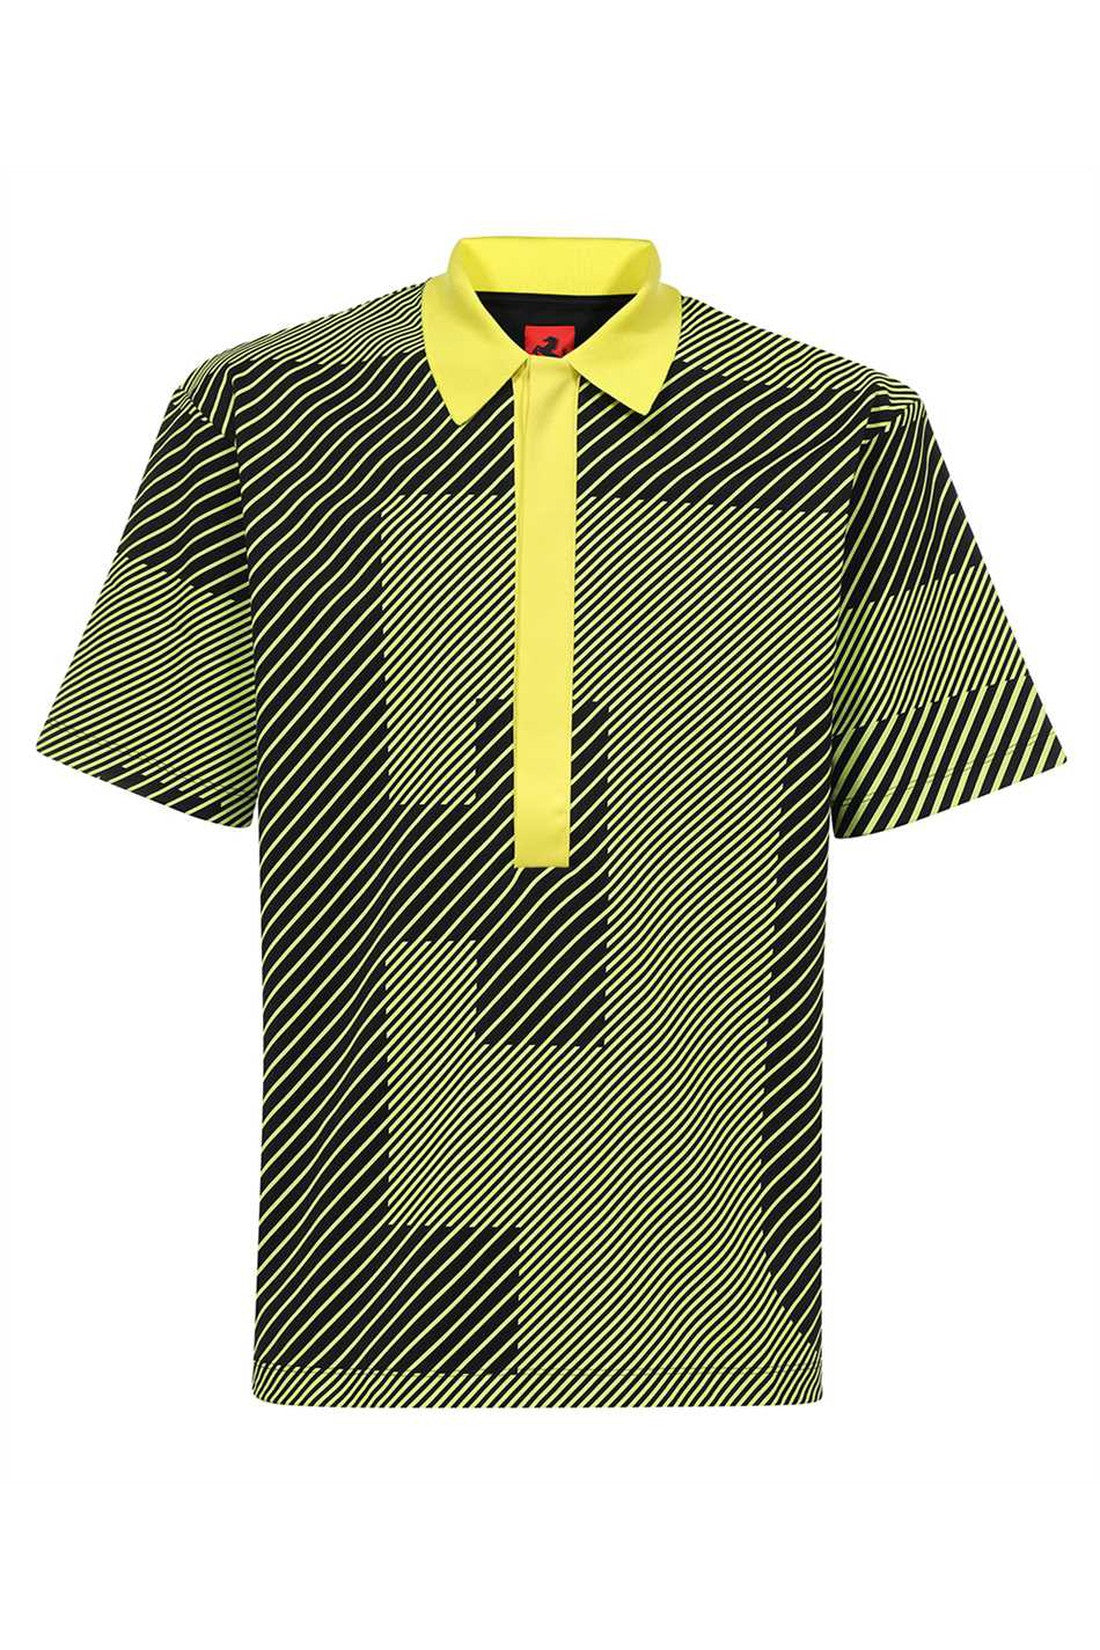 Cotton polo shirt-Ferrari-OUTLET-SALE-3XL-ARCHIVIST